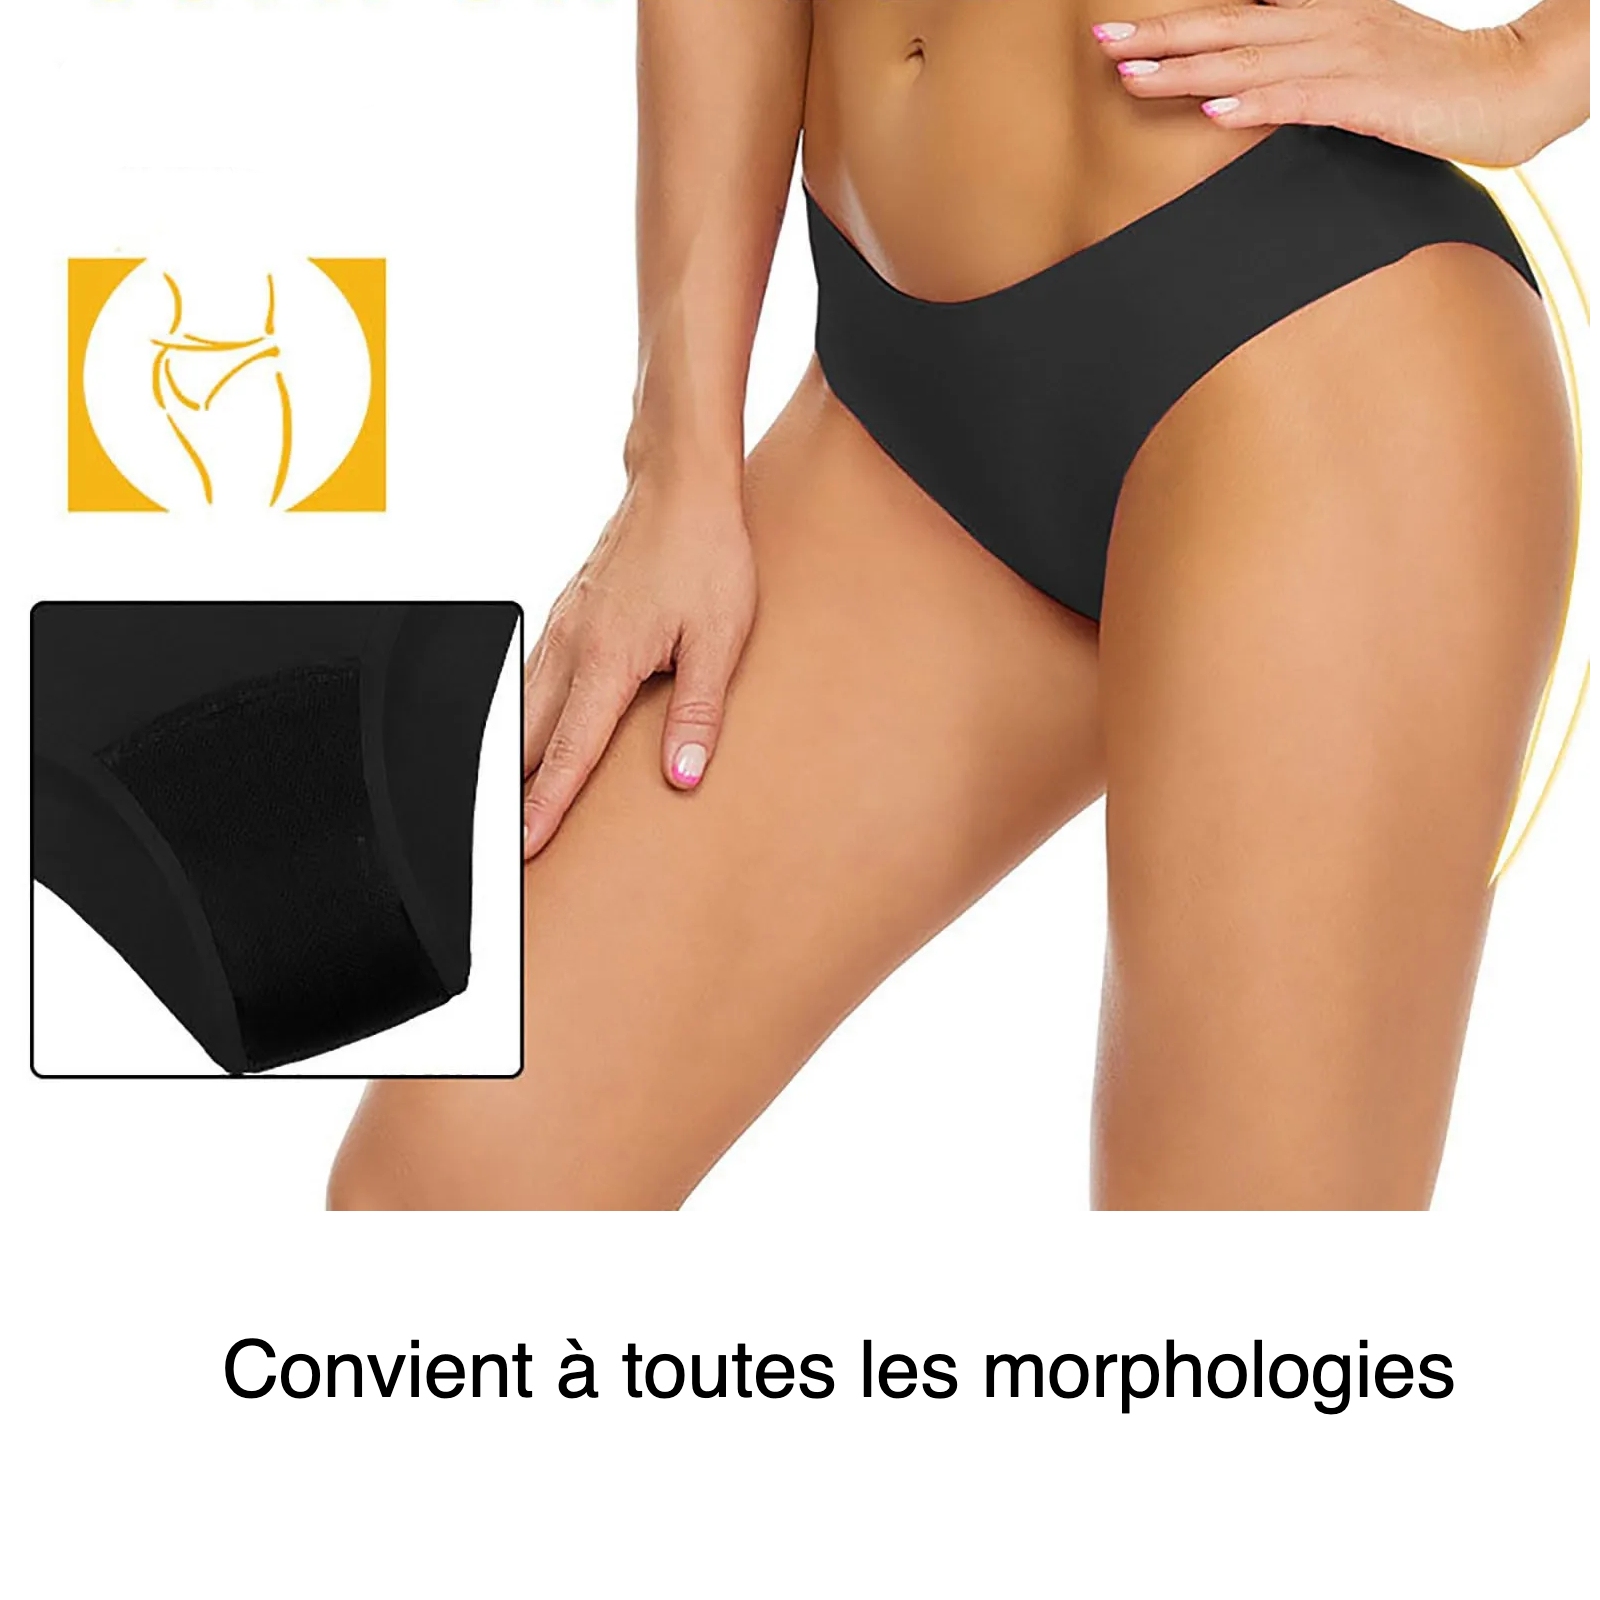 Photo monrant un bas de corps de jeun efille avec un maillot de bain menstruel noir et le bas du maillot sur la gauche